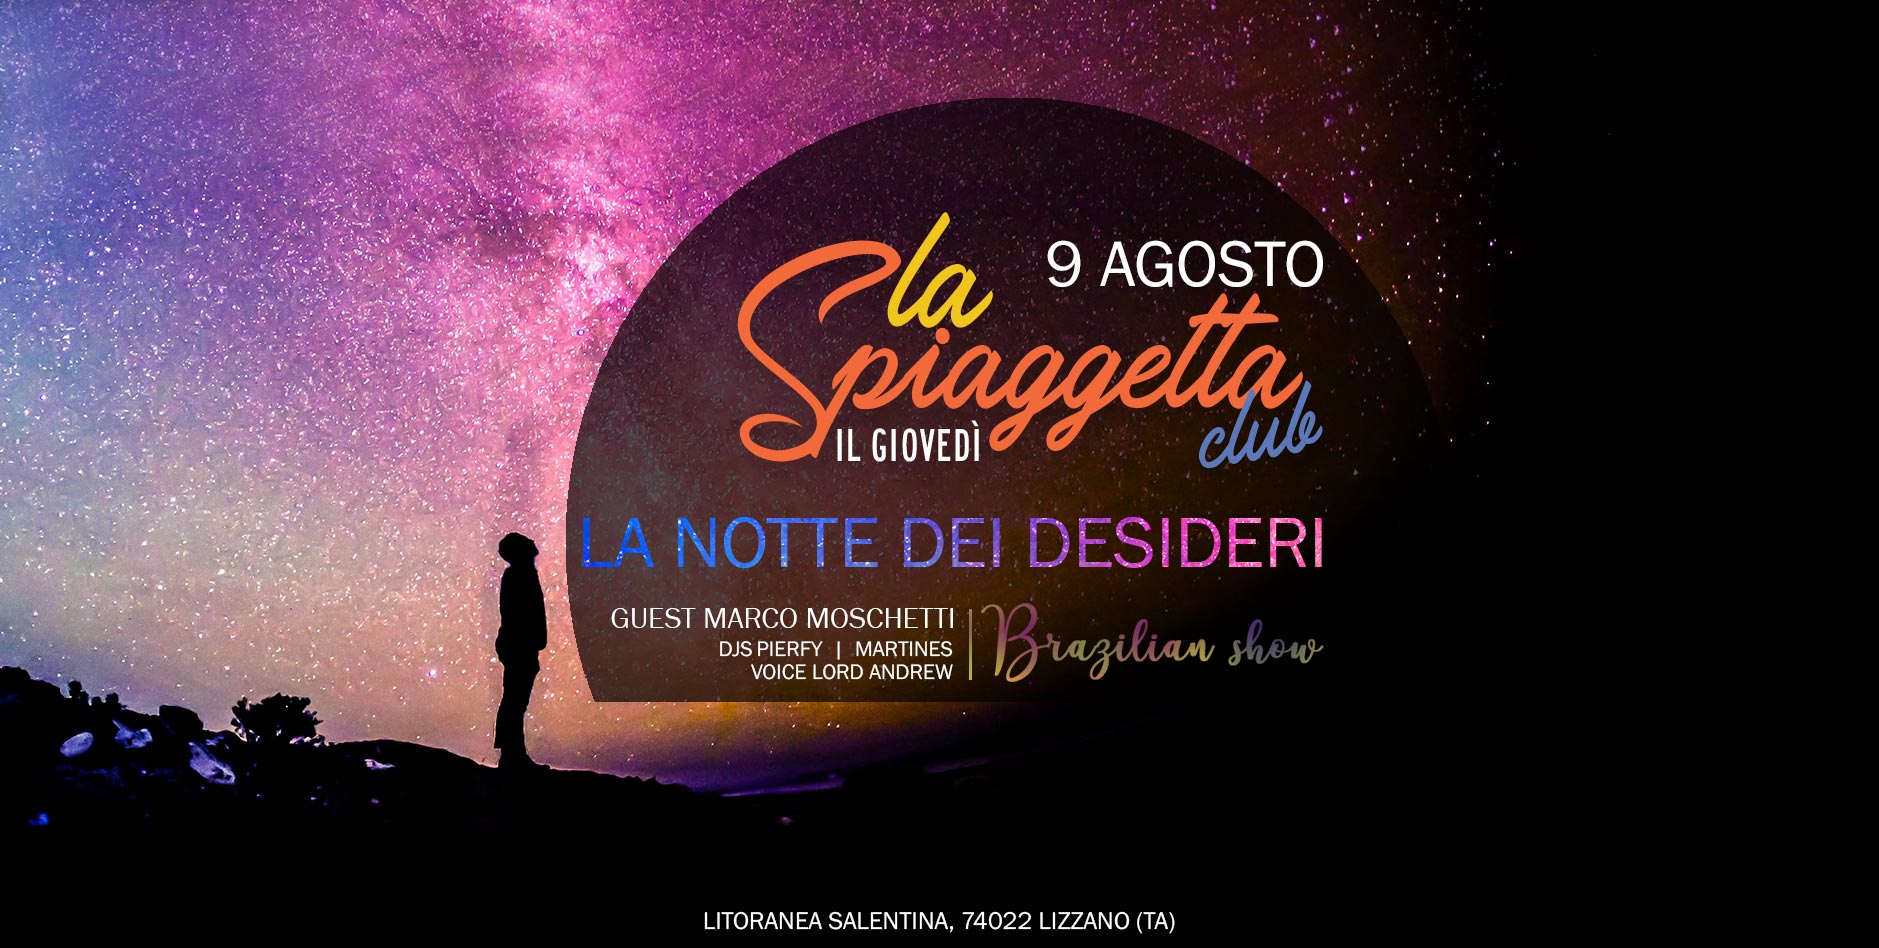 La Notte dei Desideri @La Spiaggetta Club by night